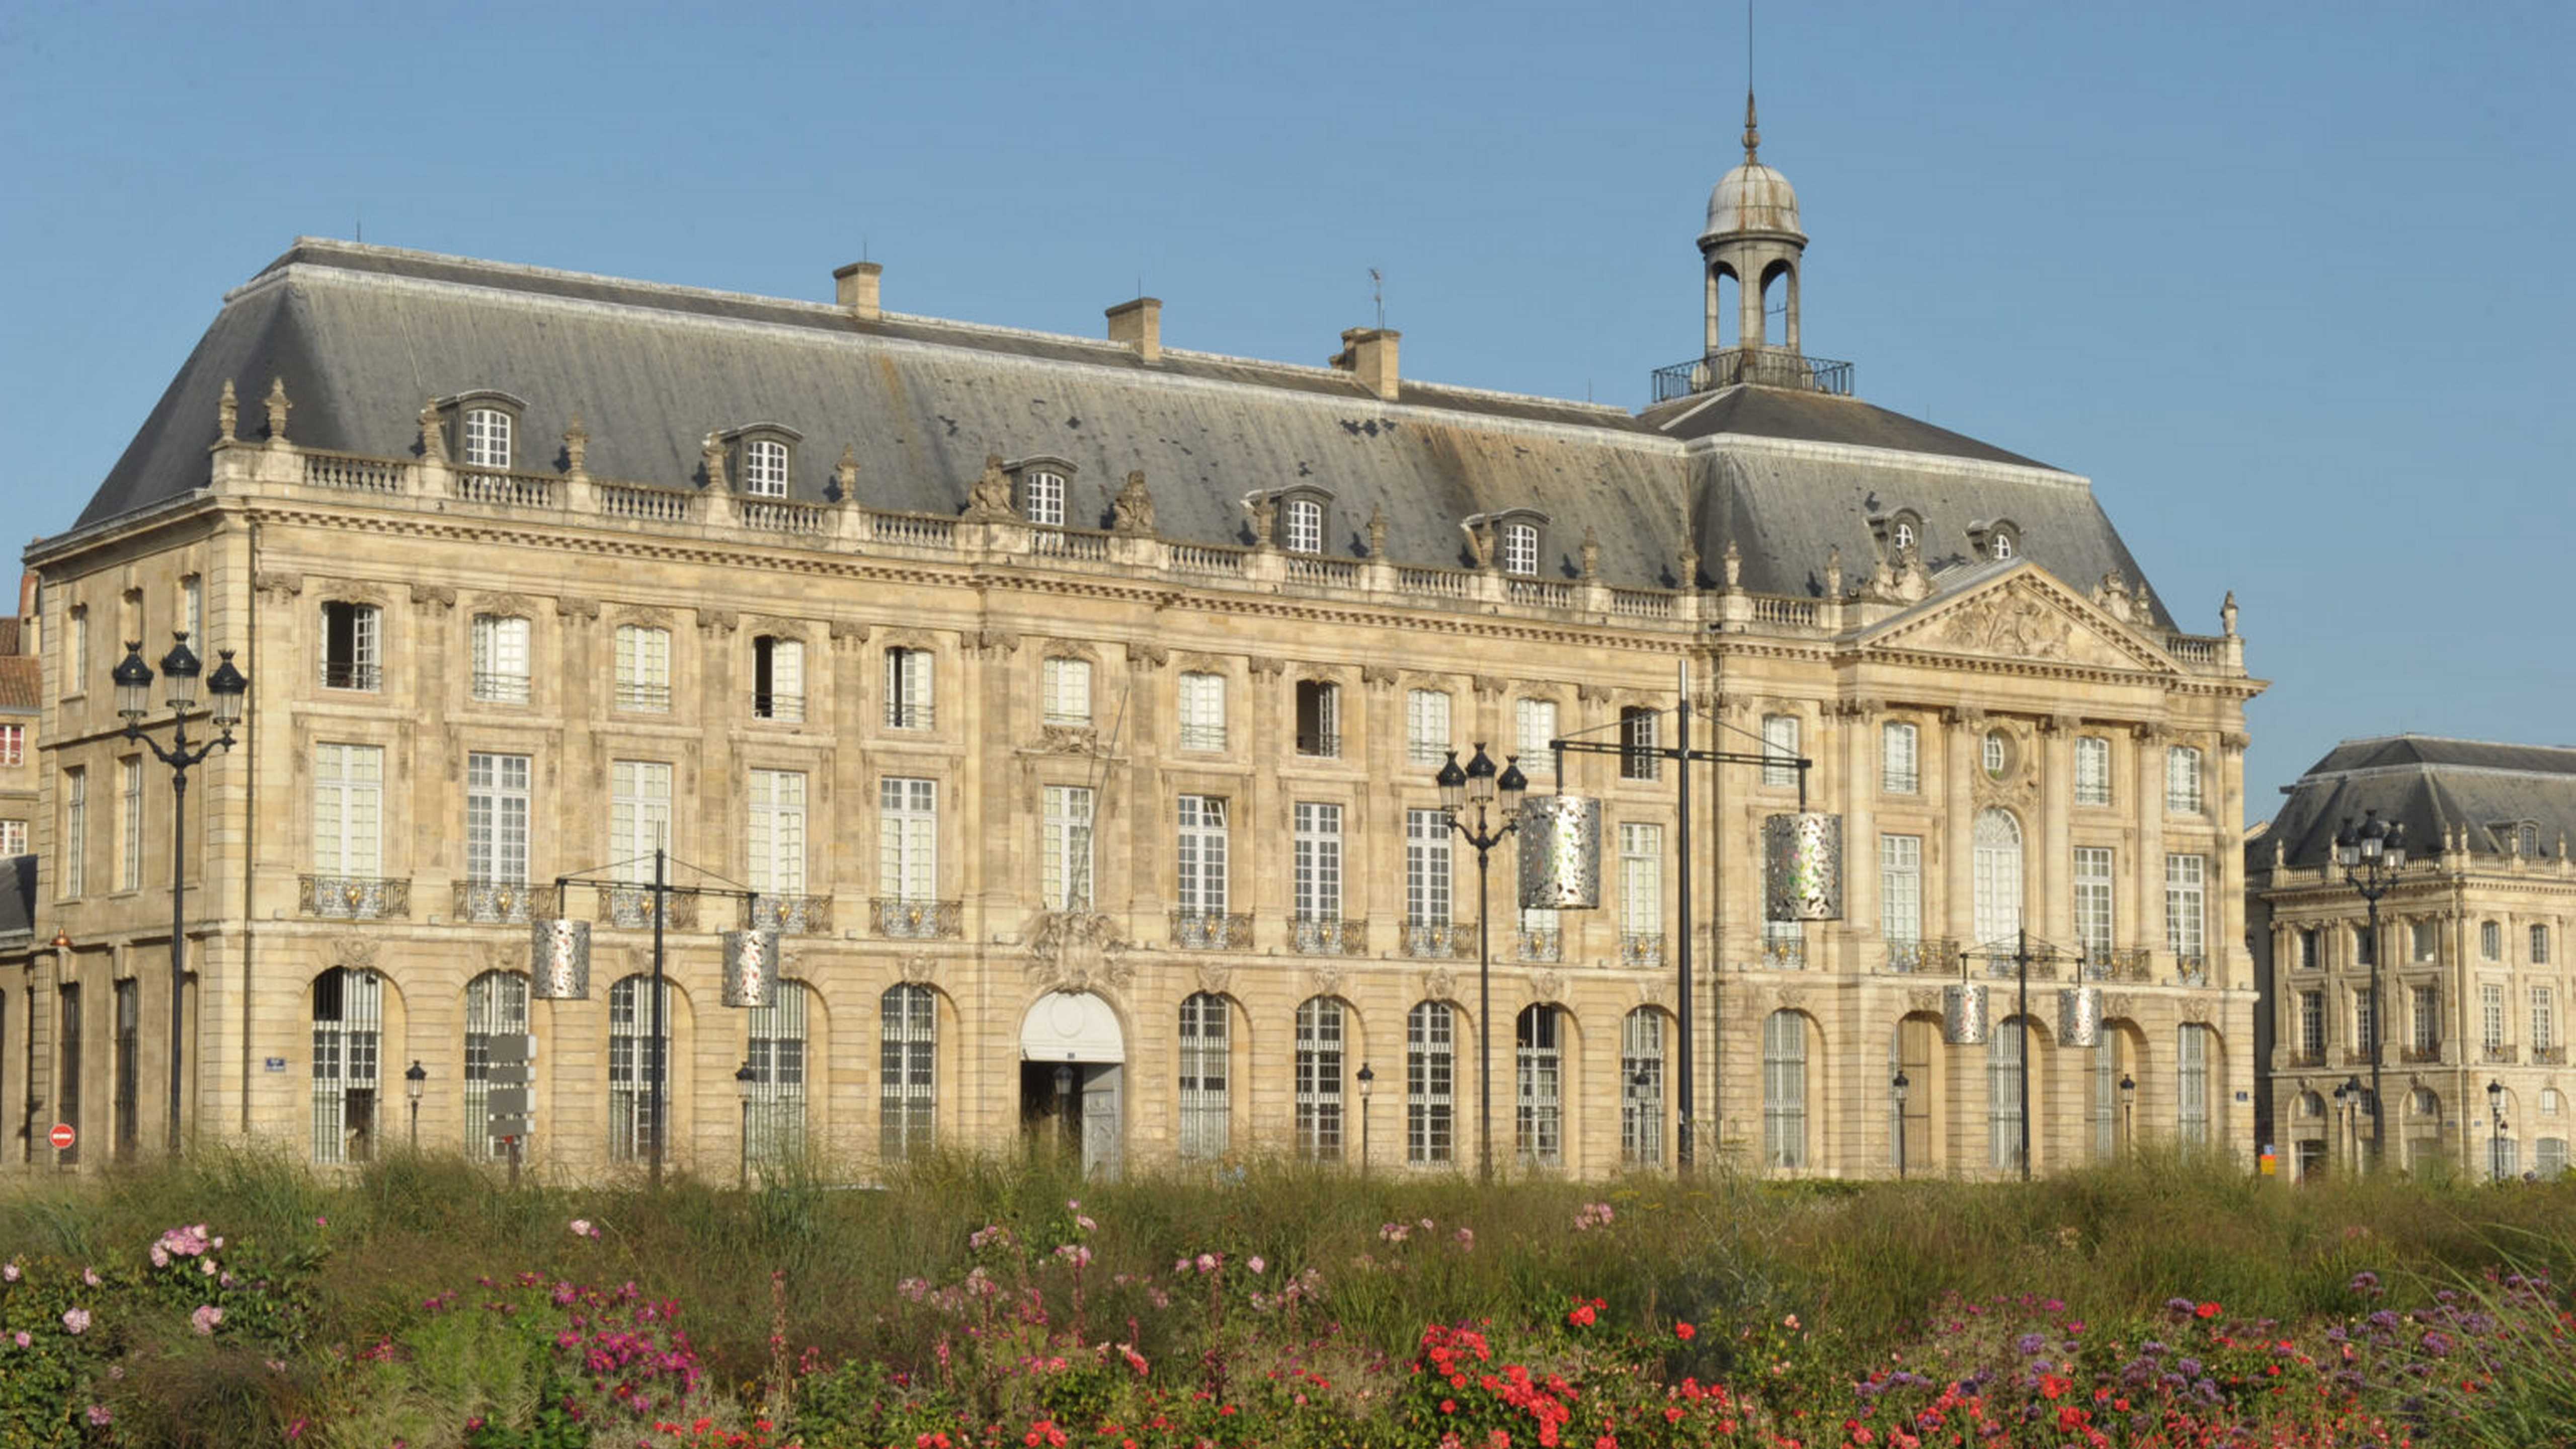 Bordeaux : un week-end festif avant fermeture pour travaux du Musée national des douanes